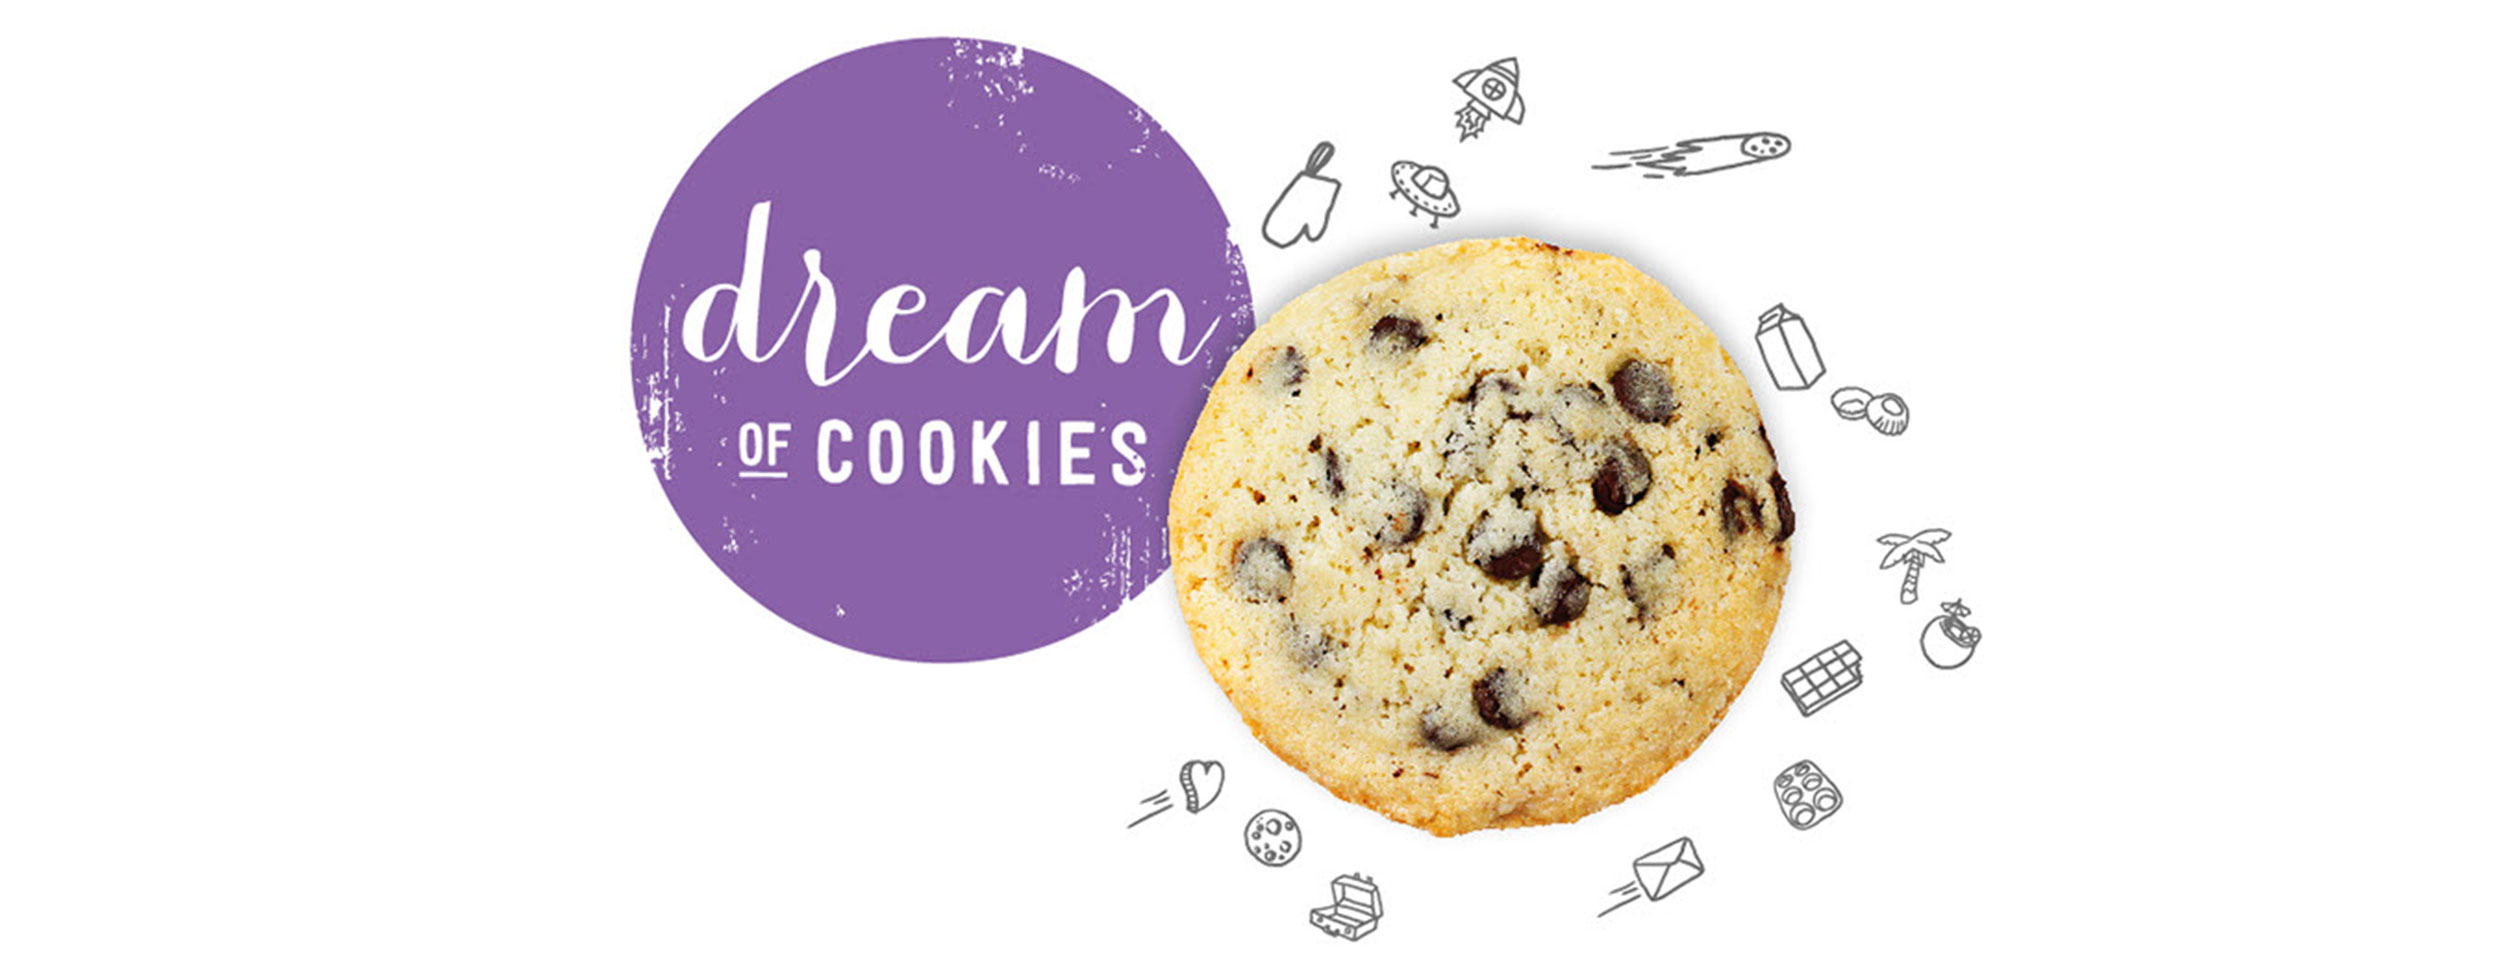 Dream of cookies